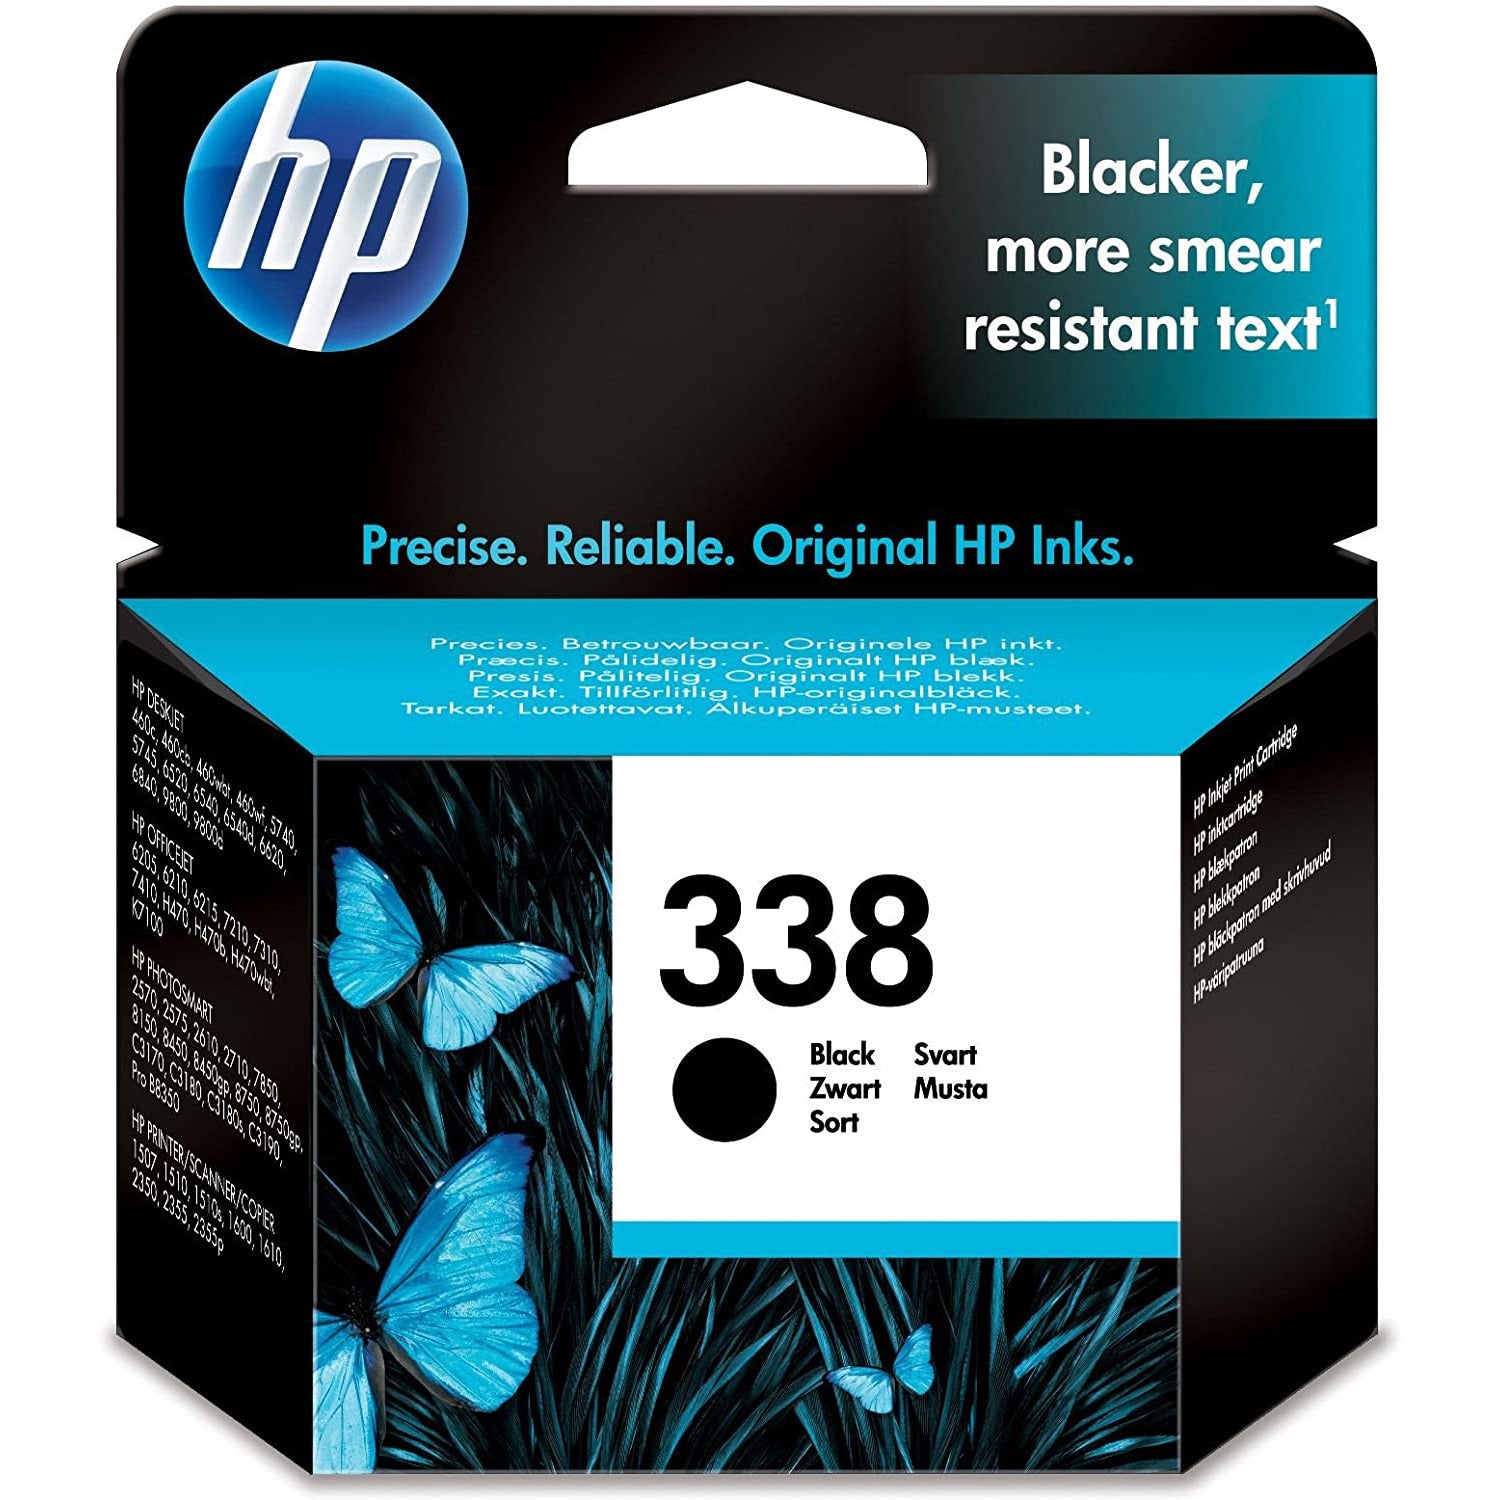 HP 338 black ink cartridge